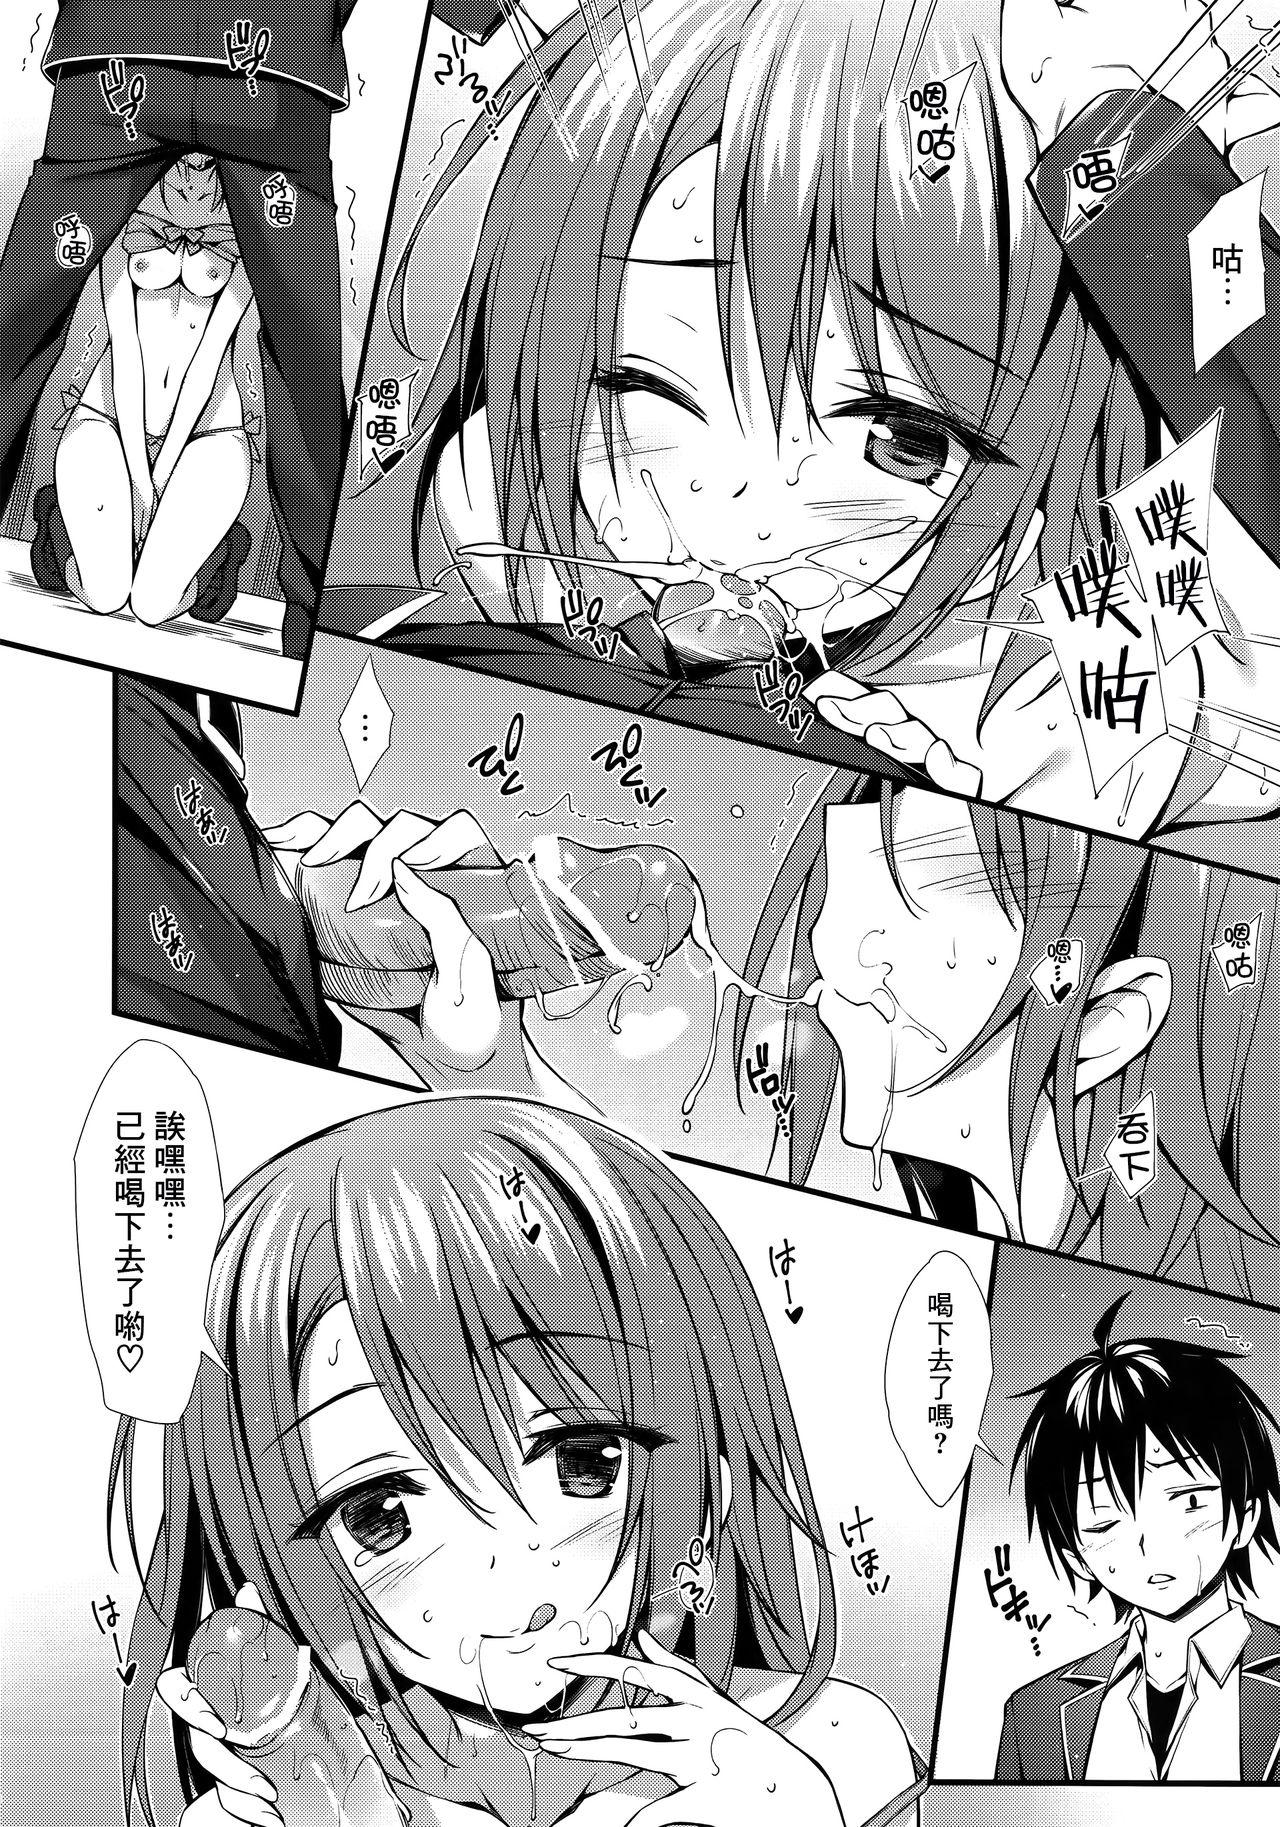 Load Atashi no Daisuki na Senpai♥ - Yahari ore no seishun love come wa machigatteiru Tats - Page 9